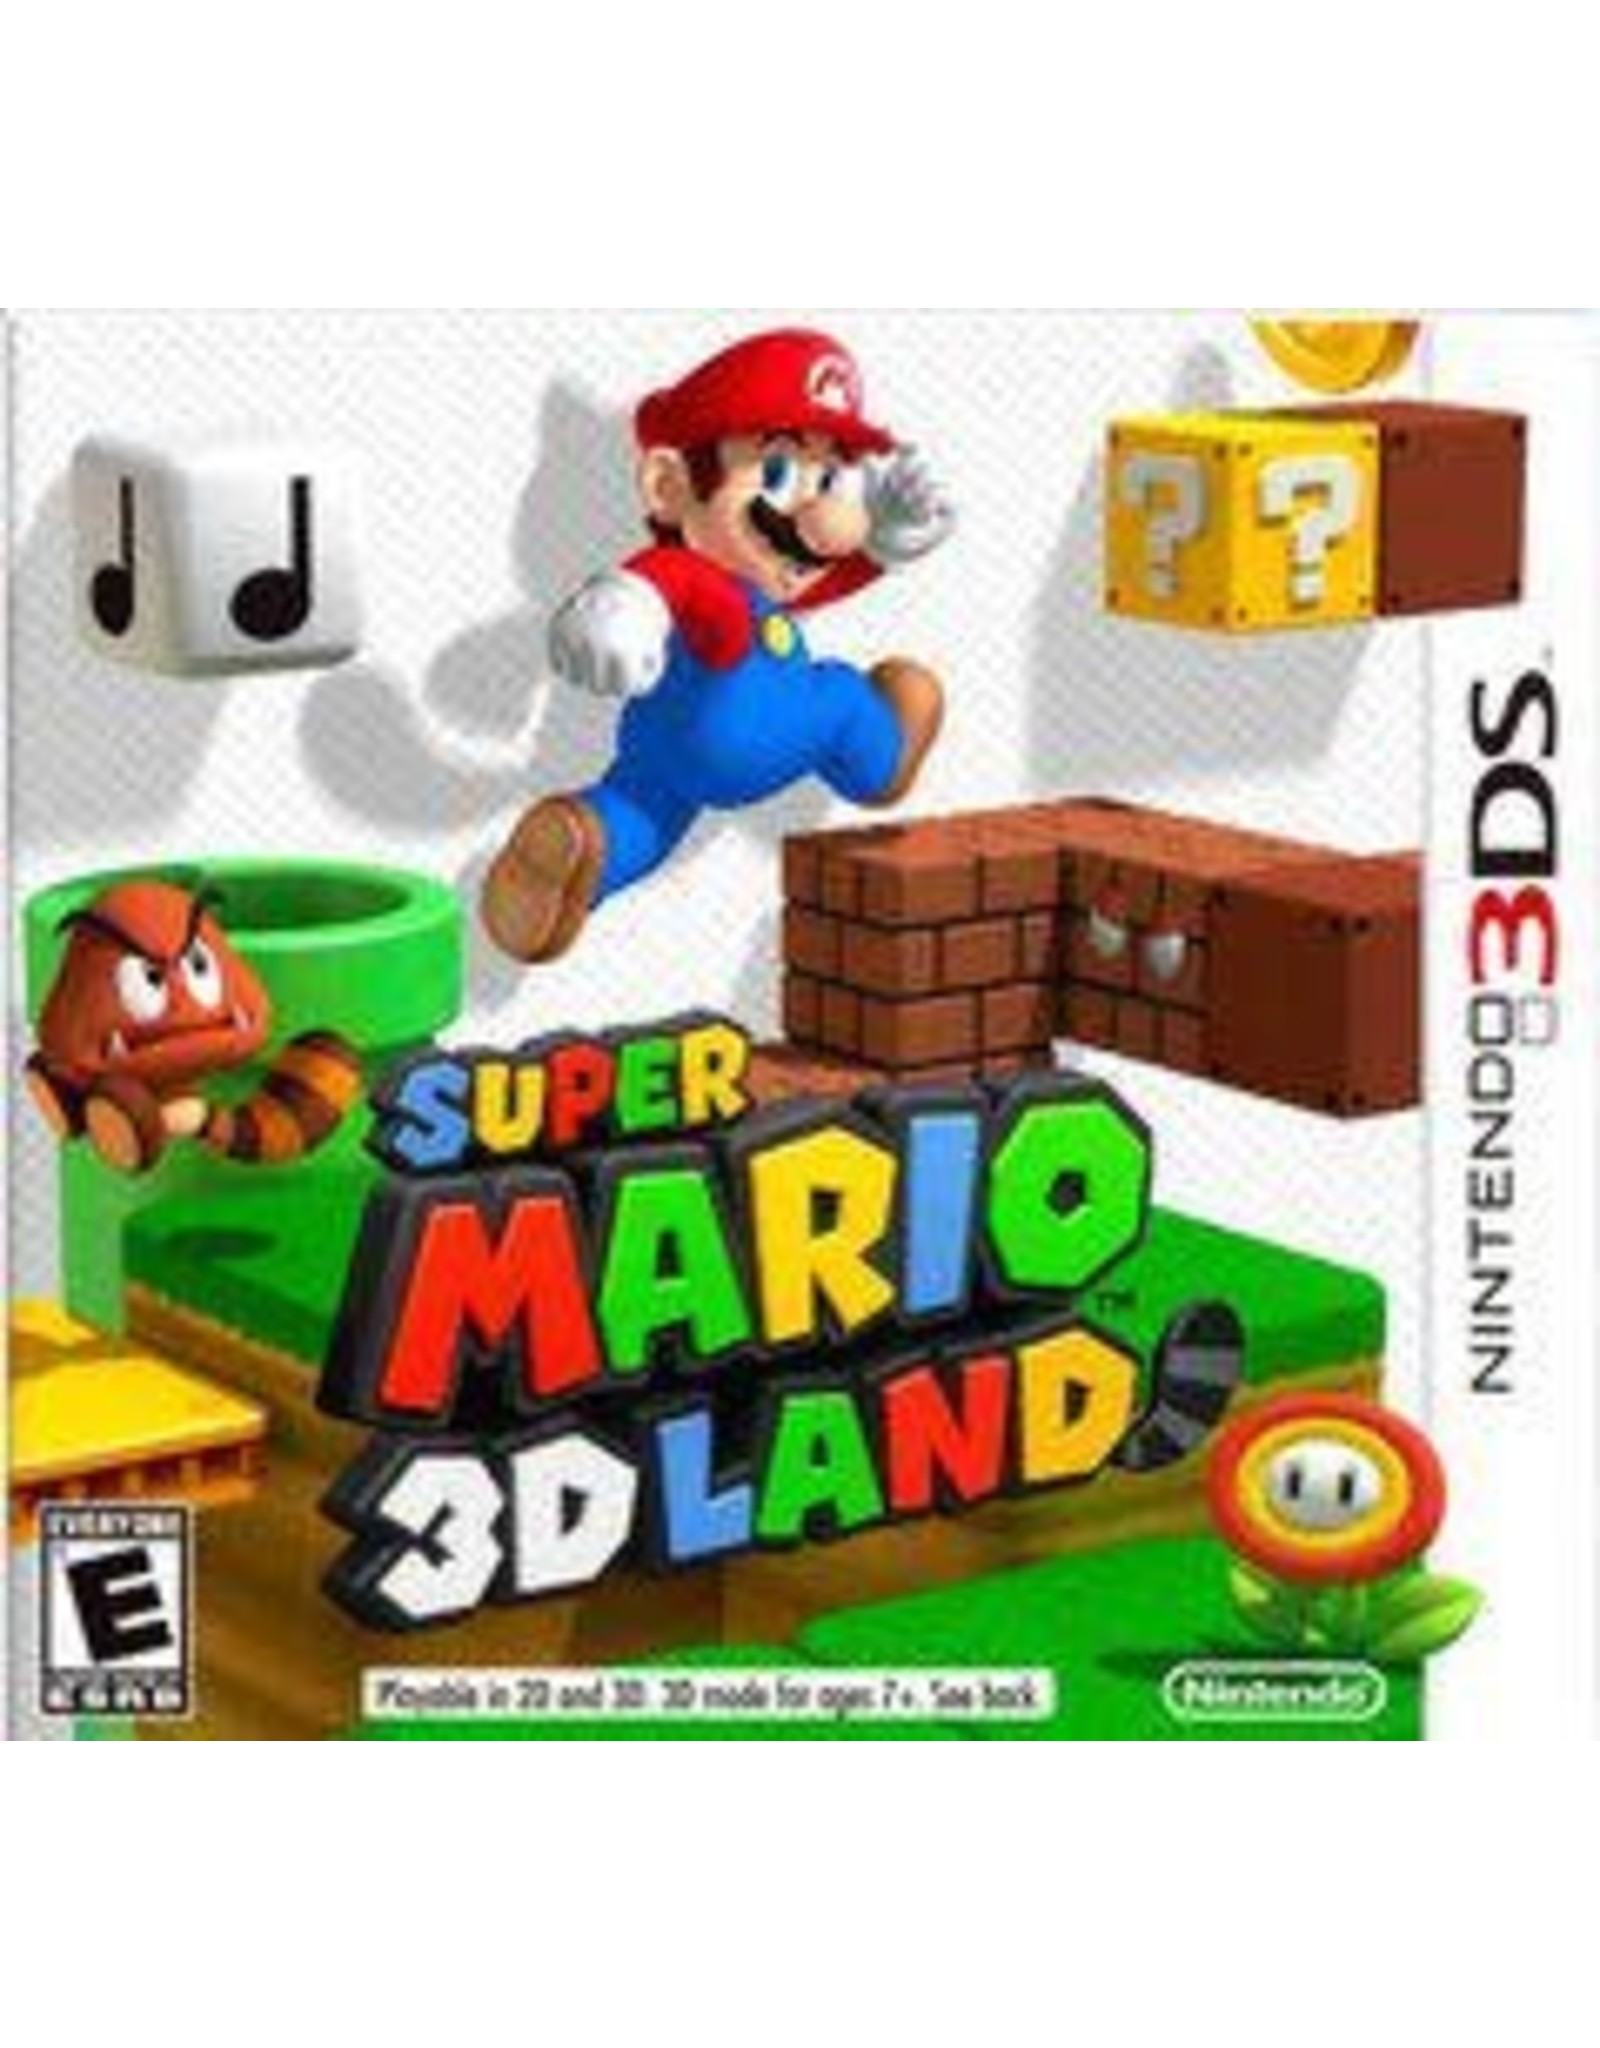 Nintendo 3DS Super Mario 3D Land (Used)